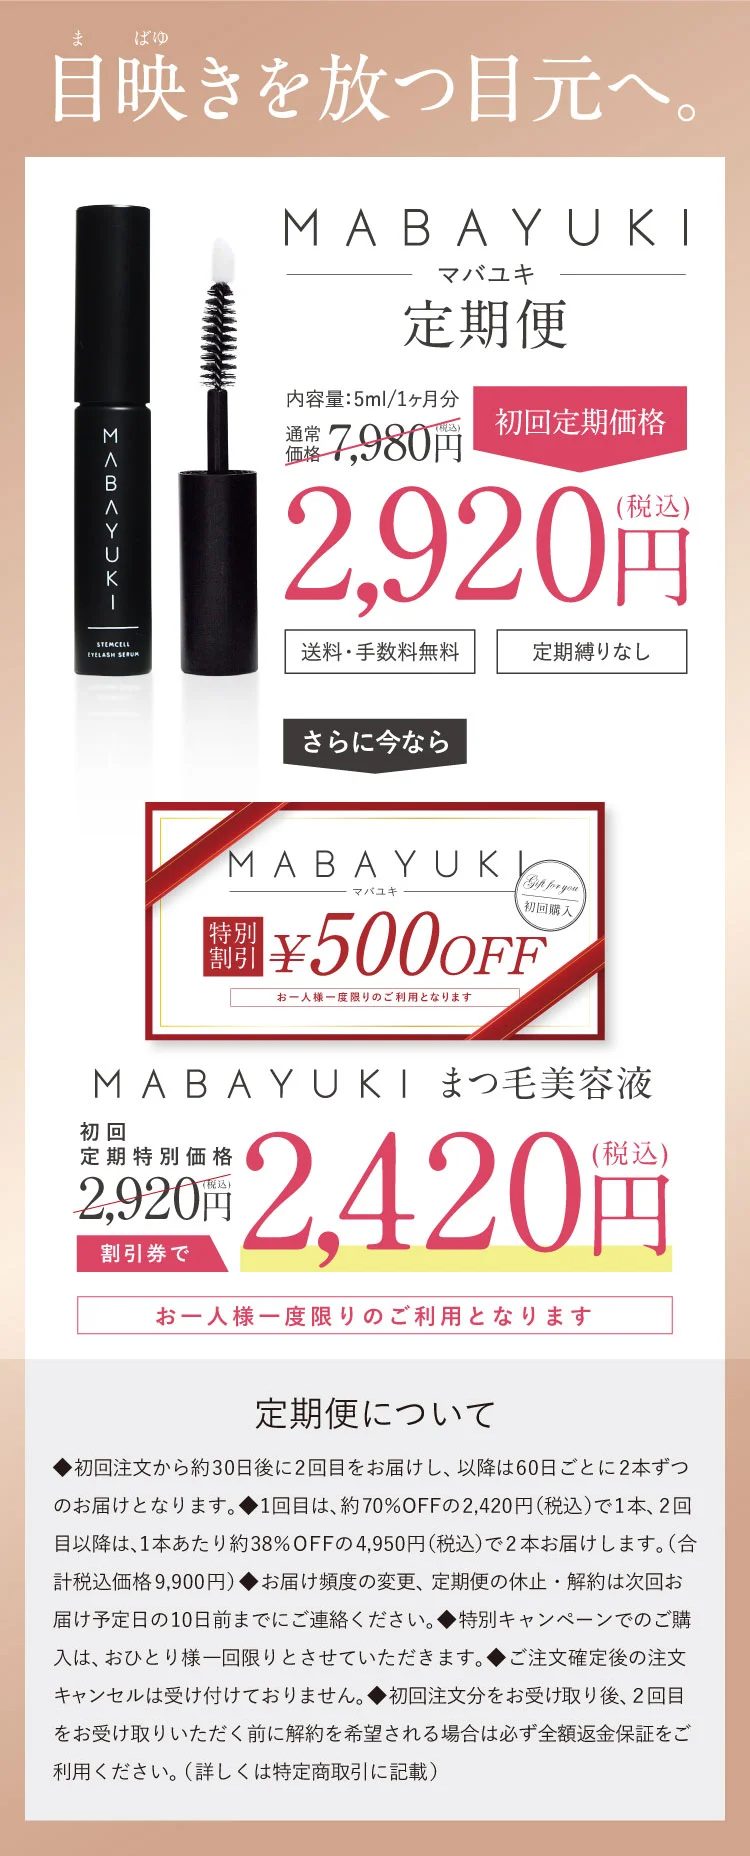 マバユキ(MABAYUKI),販売店,最安値,市販,どこで売ってる,実店舗,取り扱い店